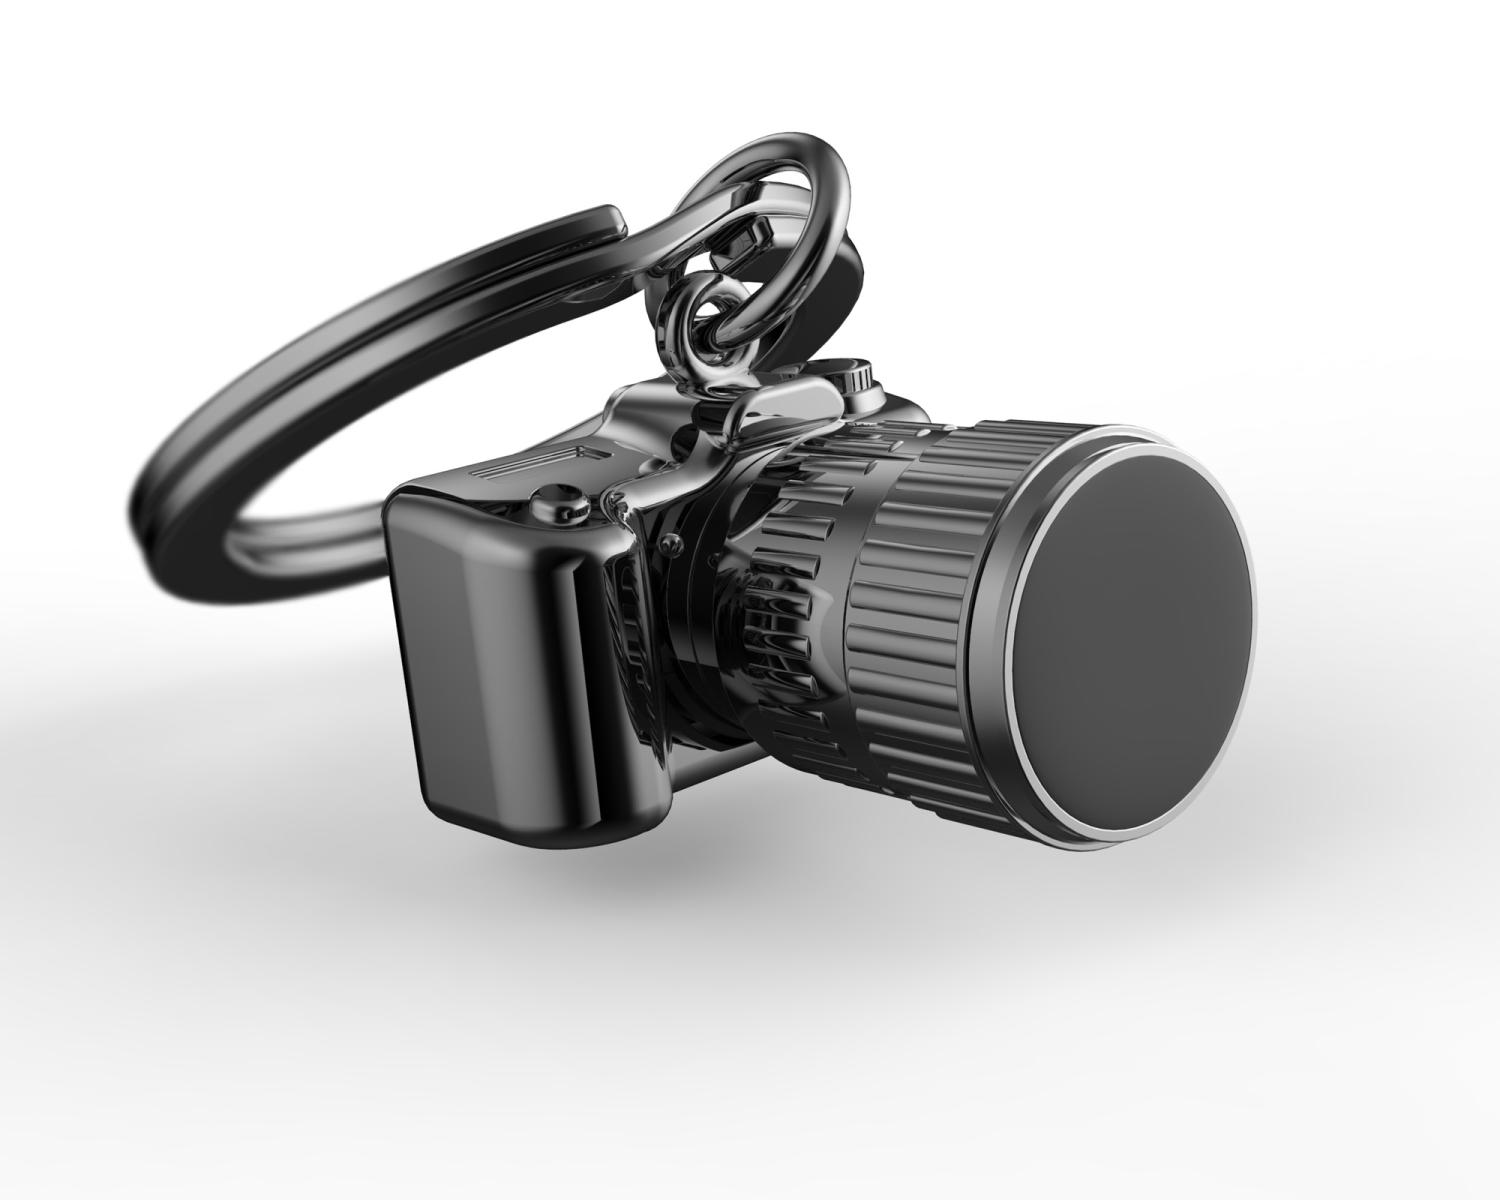 Nyckelring/Berlock - kamera